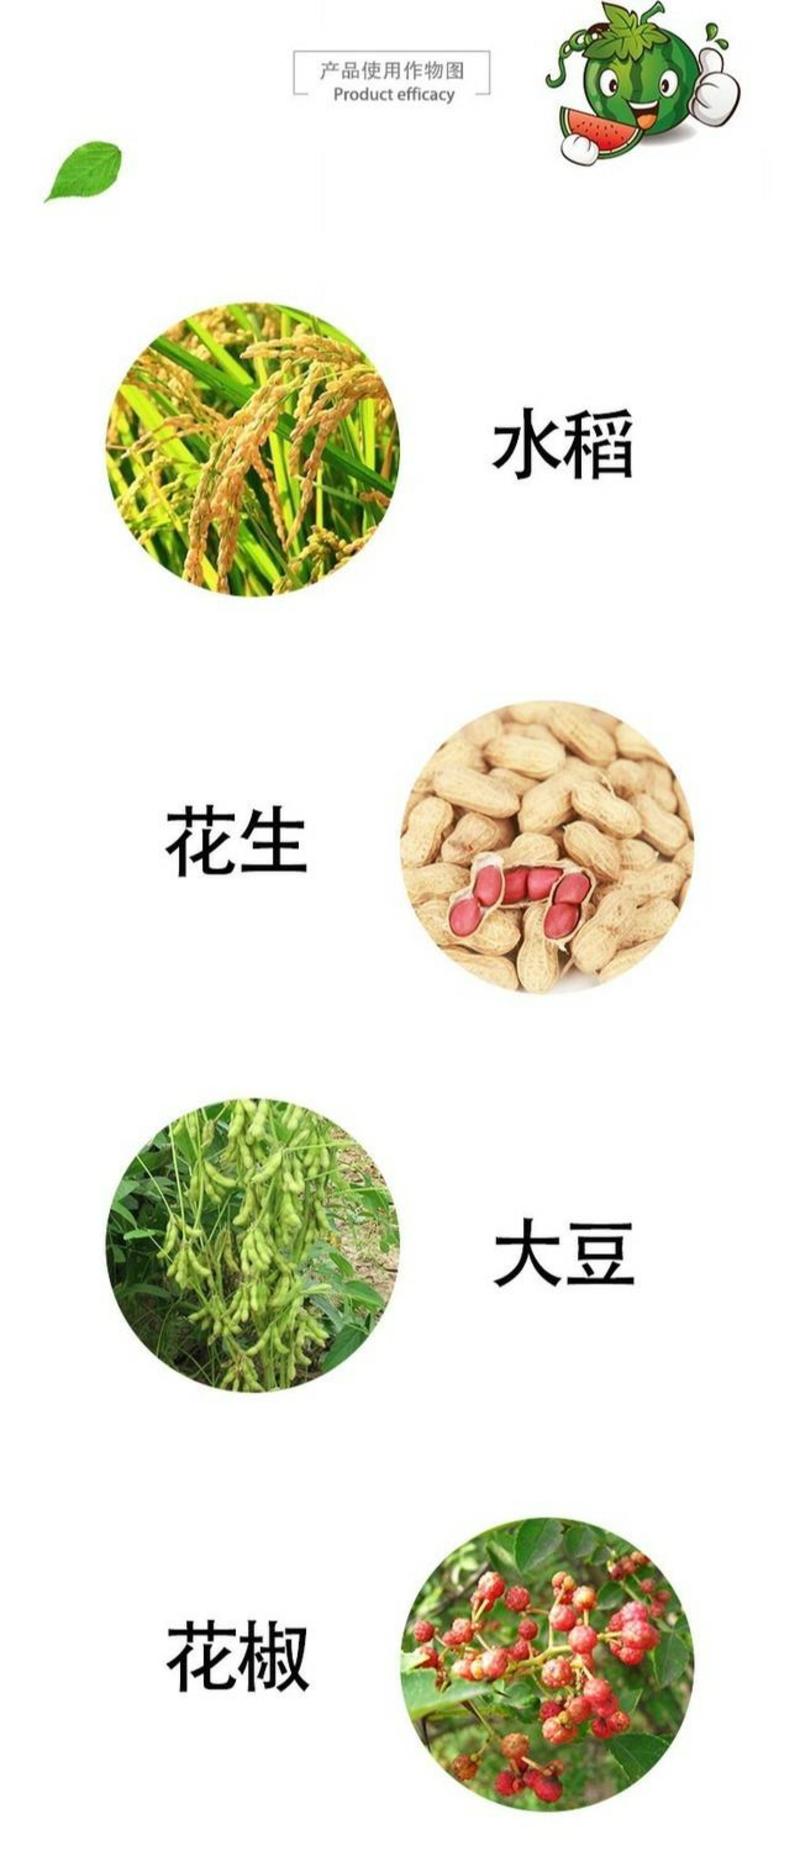 5%烯效唑花椒收老药水稻花生大豆果树药材多肉控旺长农药